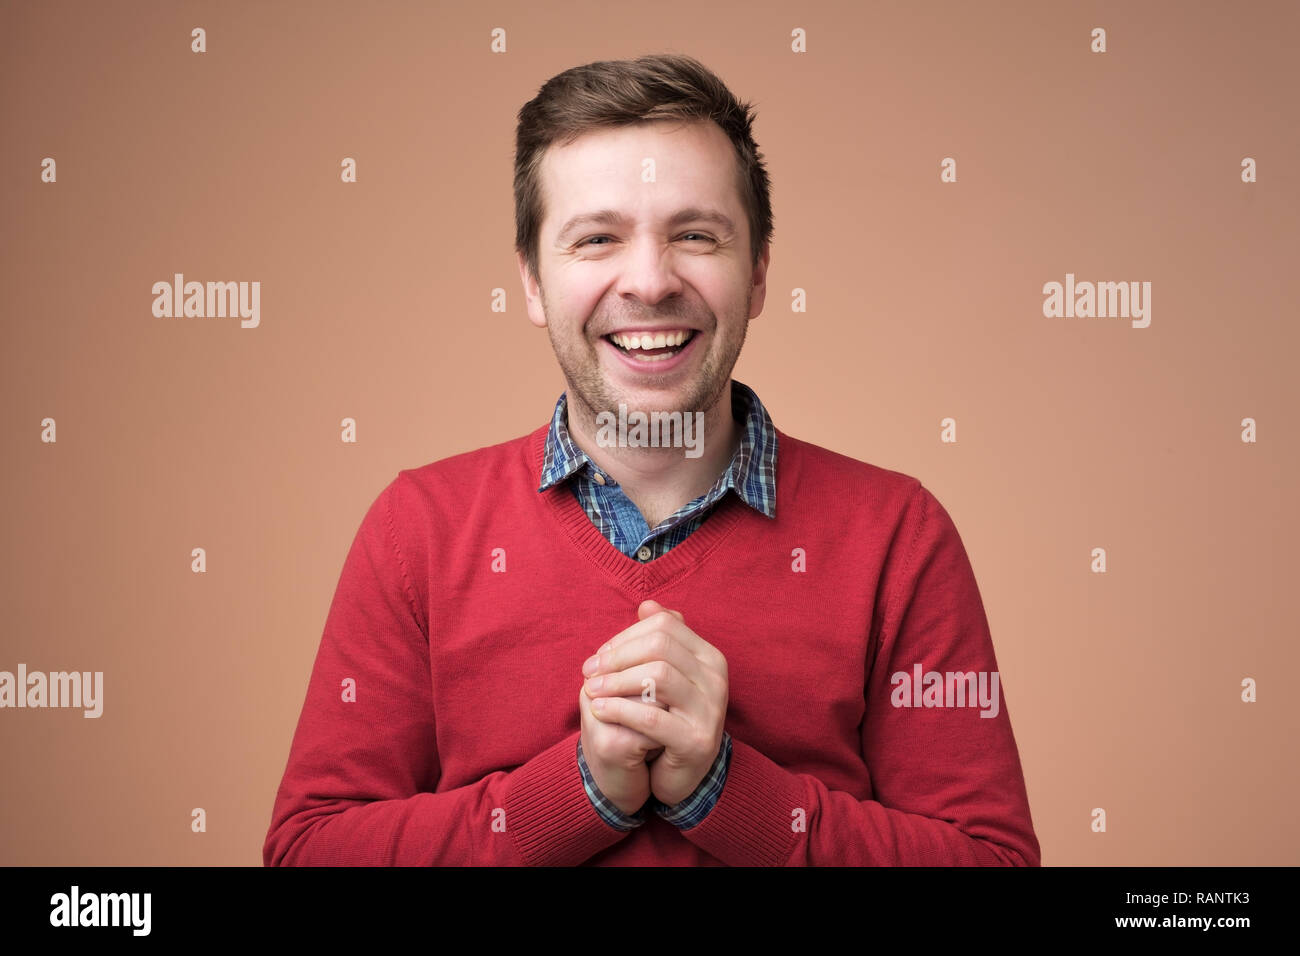 Bonne Adultes à homme européen tenant la main, rire et sourire, s'amuser Banque D'Images